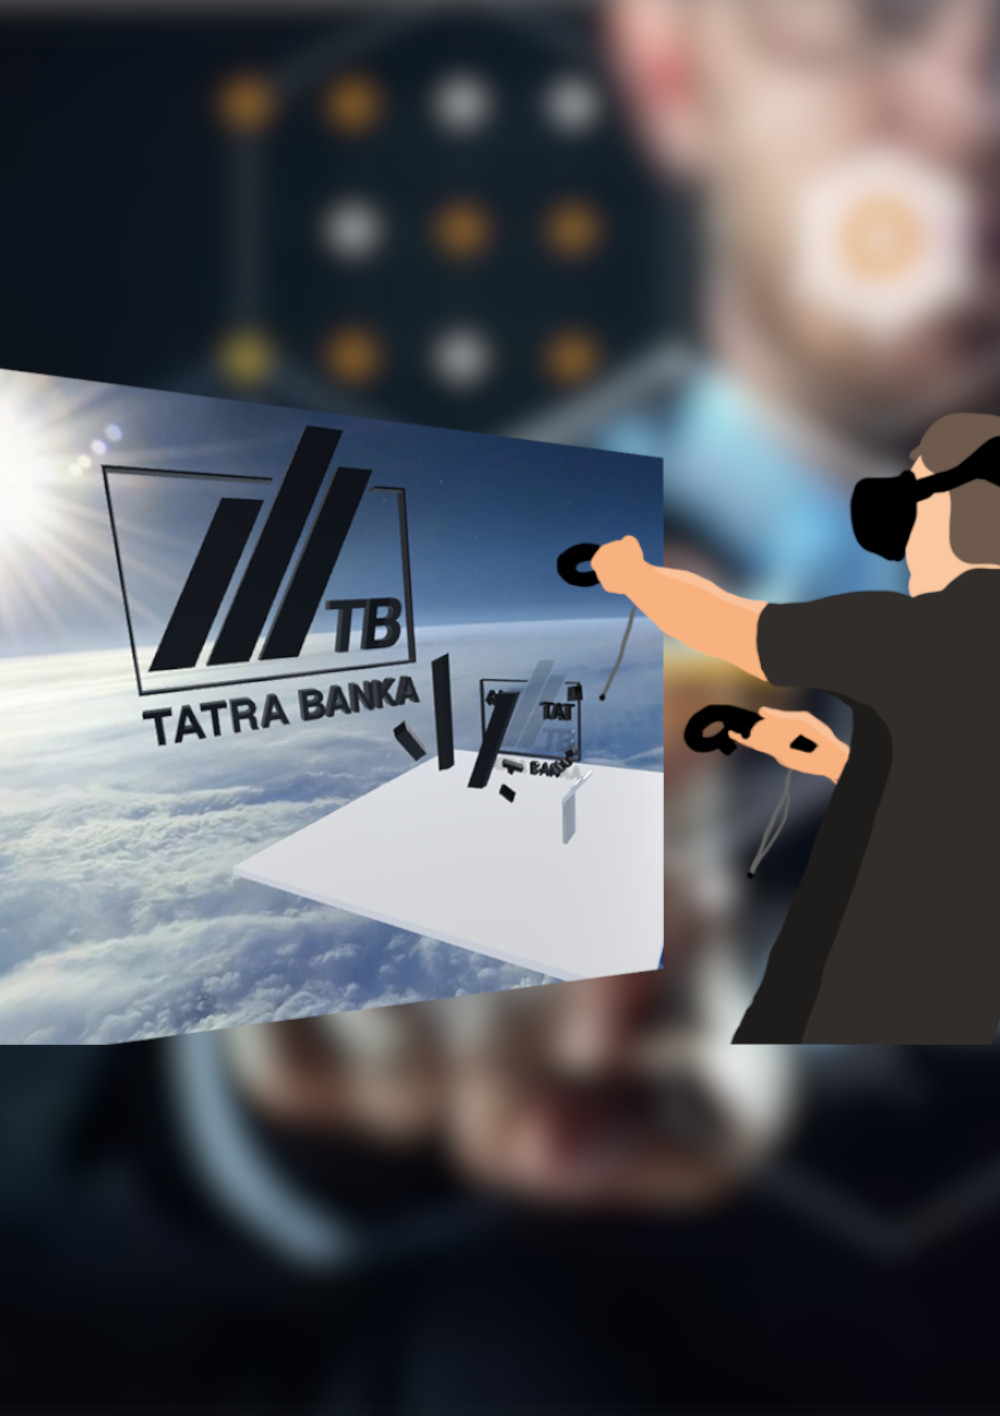 TATRABANKA – VR experience